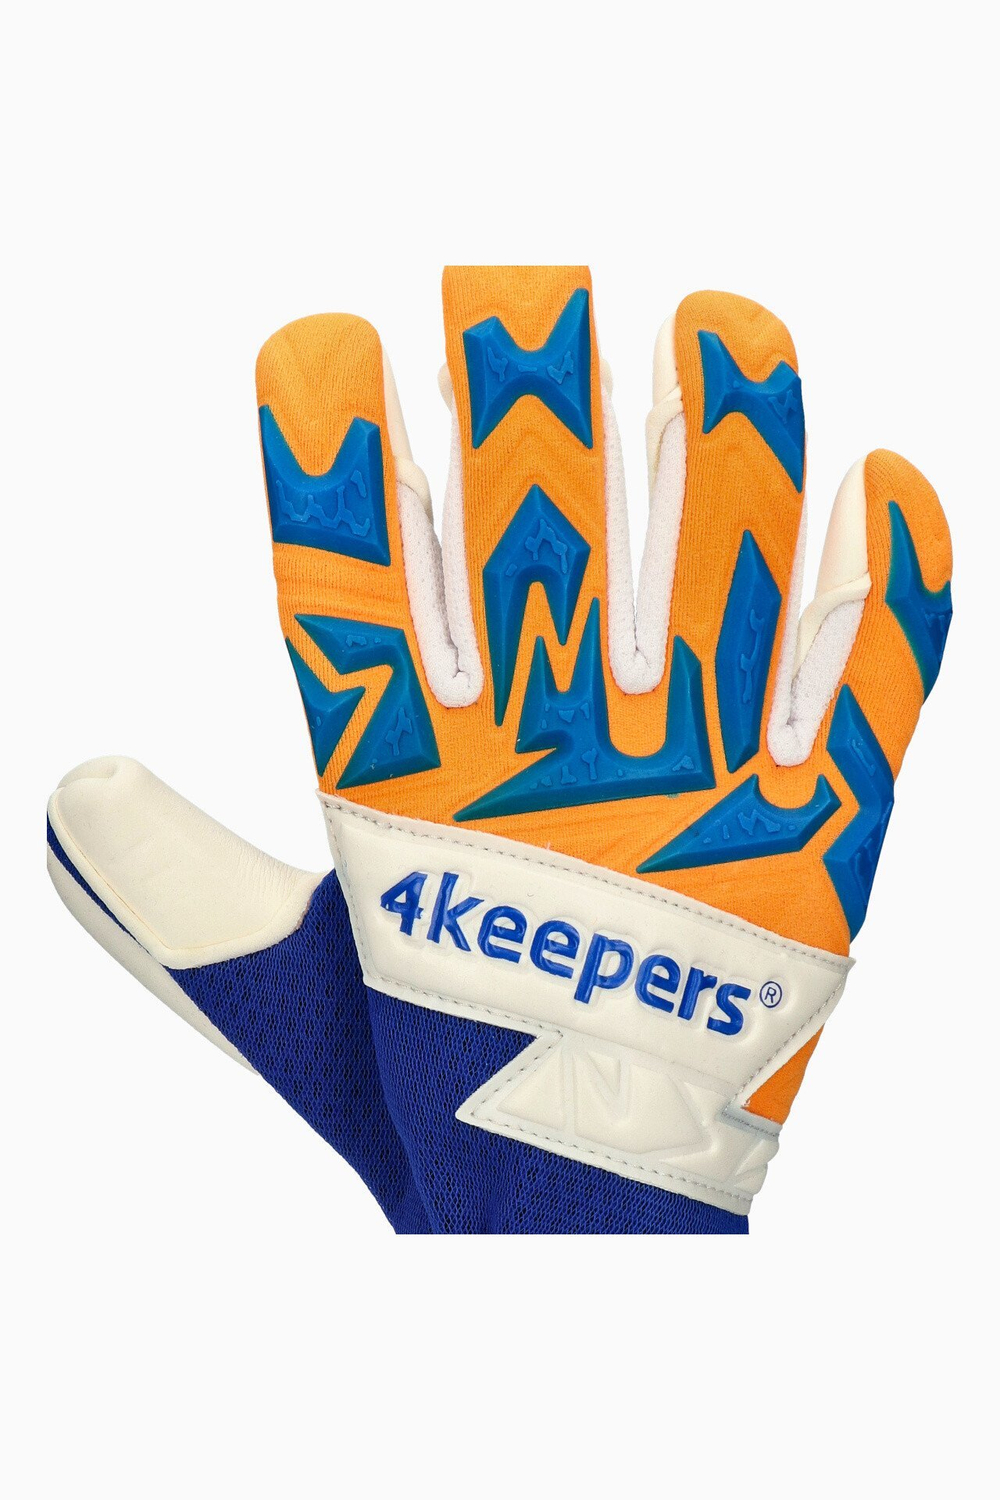 Вратарские перчатки 4keepers Equip Puesta NC Junior